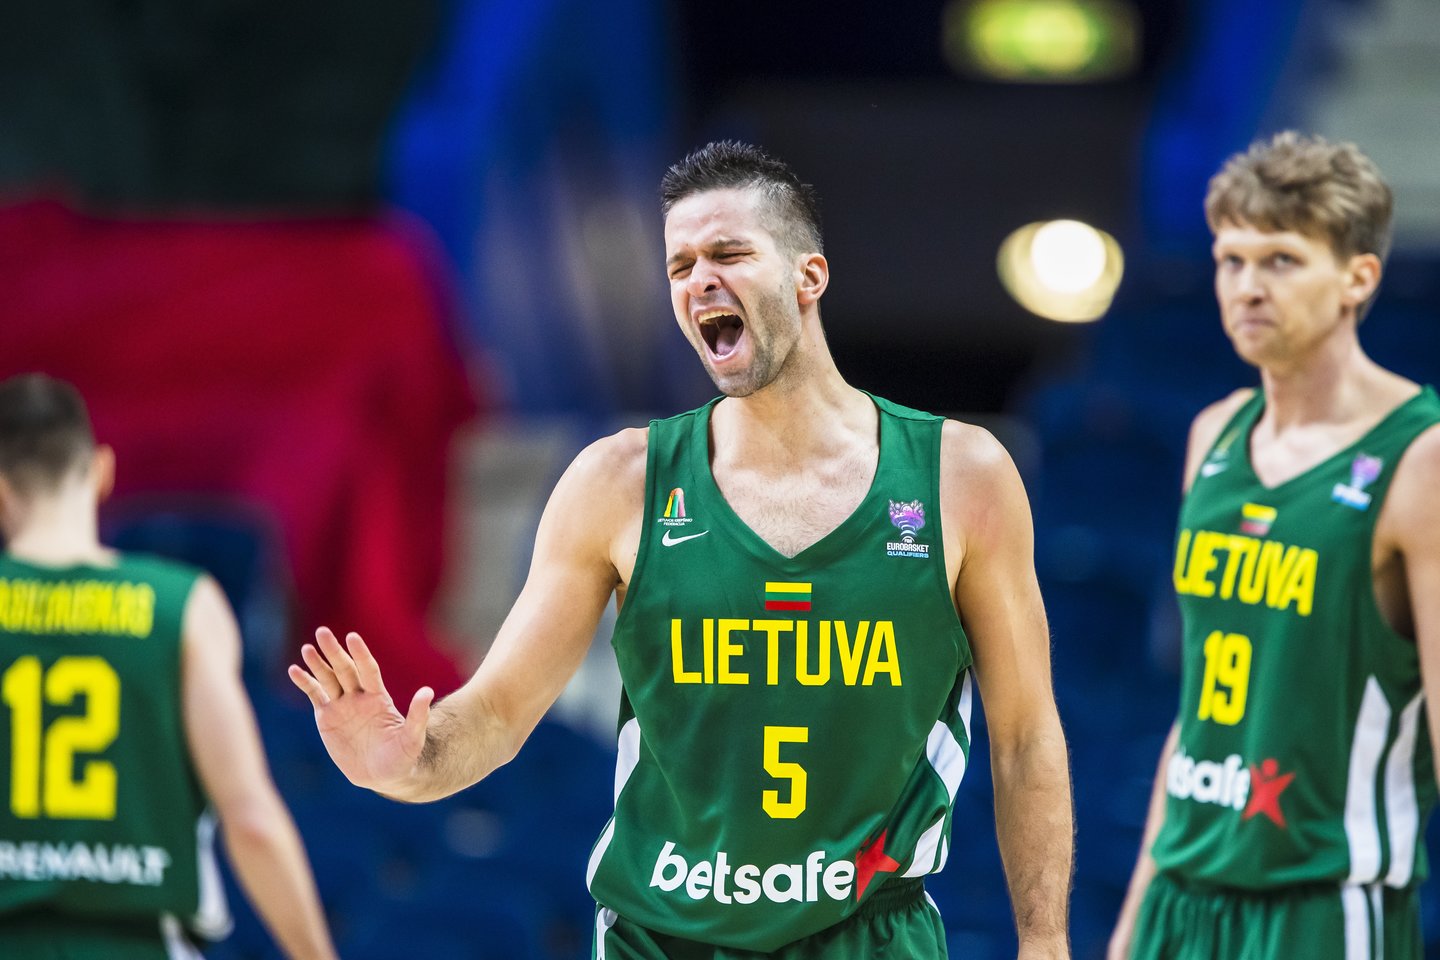 Lietuvos krepšinio rinktinė pradeda kovas dėl kelialapio į pasaulio čempionatą.<br>Reuters/Scabpix.com nuotr.